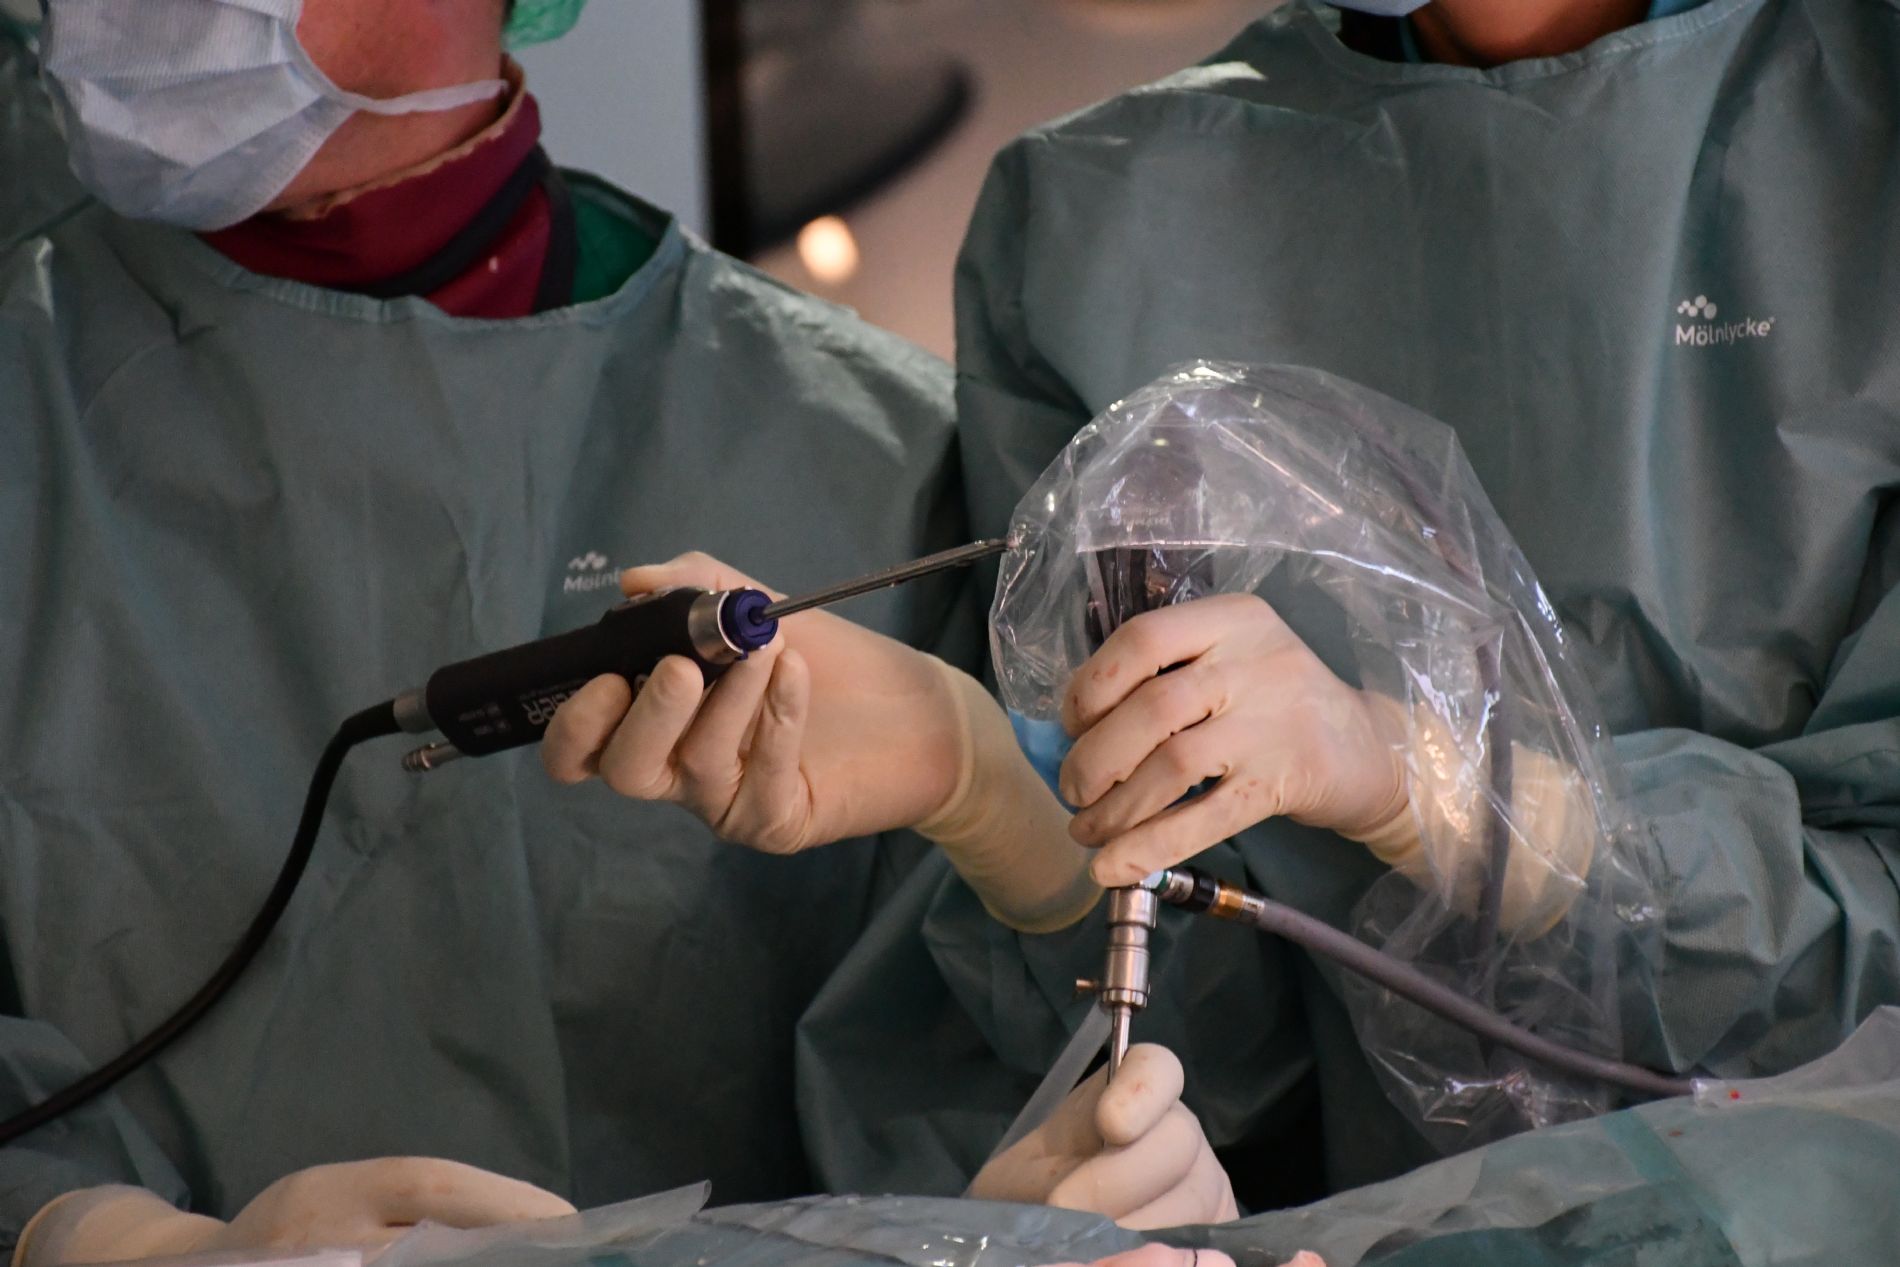 El Hospital Centro Médico de Asturias realiza la primera cirugía de estenosis de canal mediante endoscopia biportal en Asturias